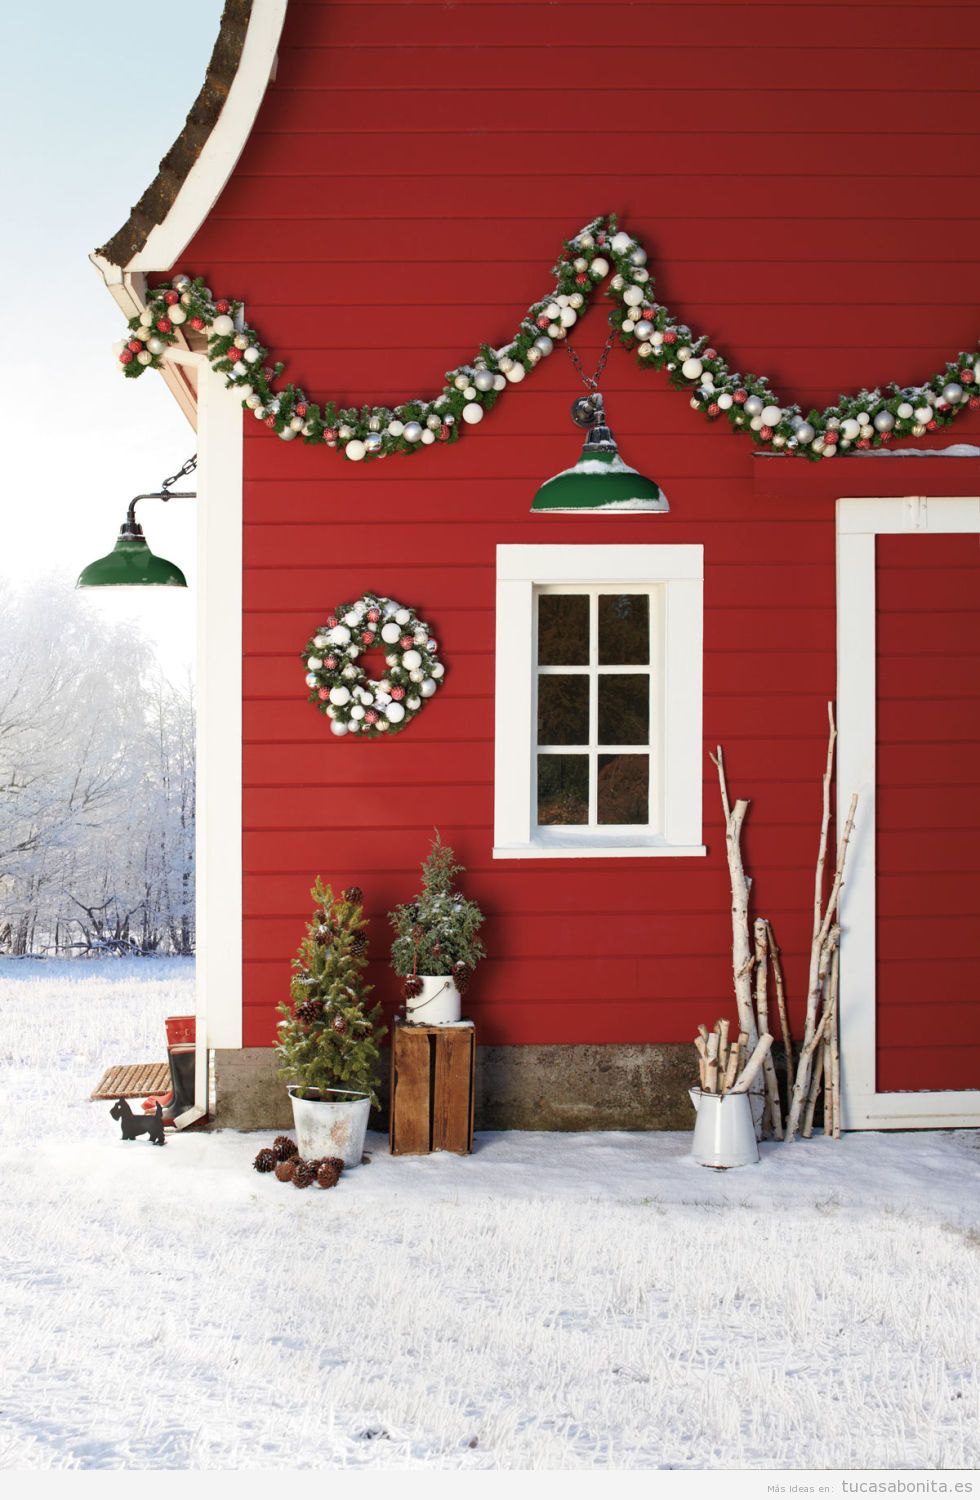 Mutuo la seguridad isla 10 decoraciones bonitas y elegantes para el exterior de las casa en Navidad  - Tu casa Bonita